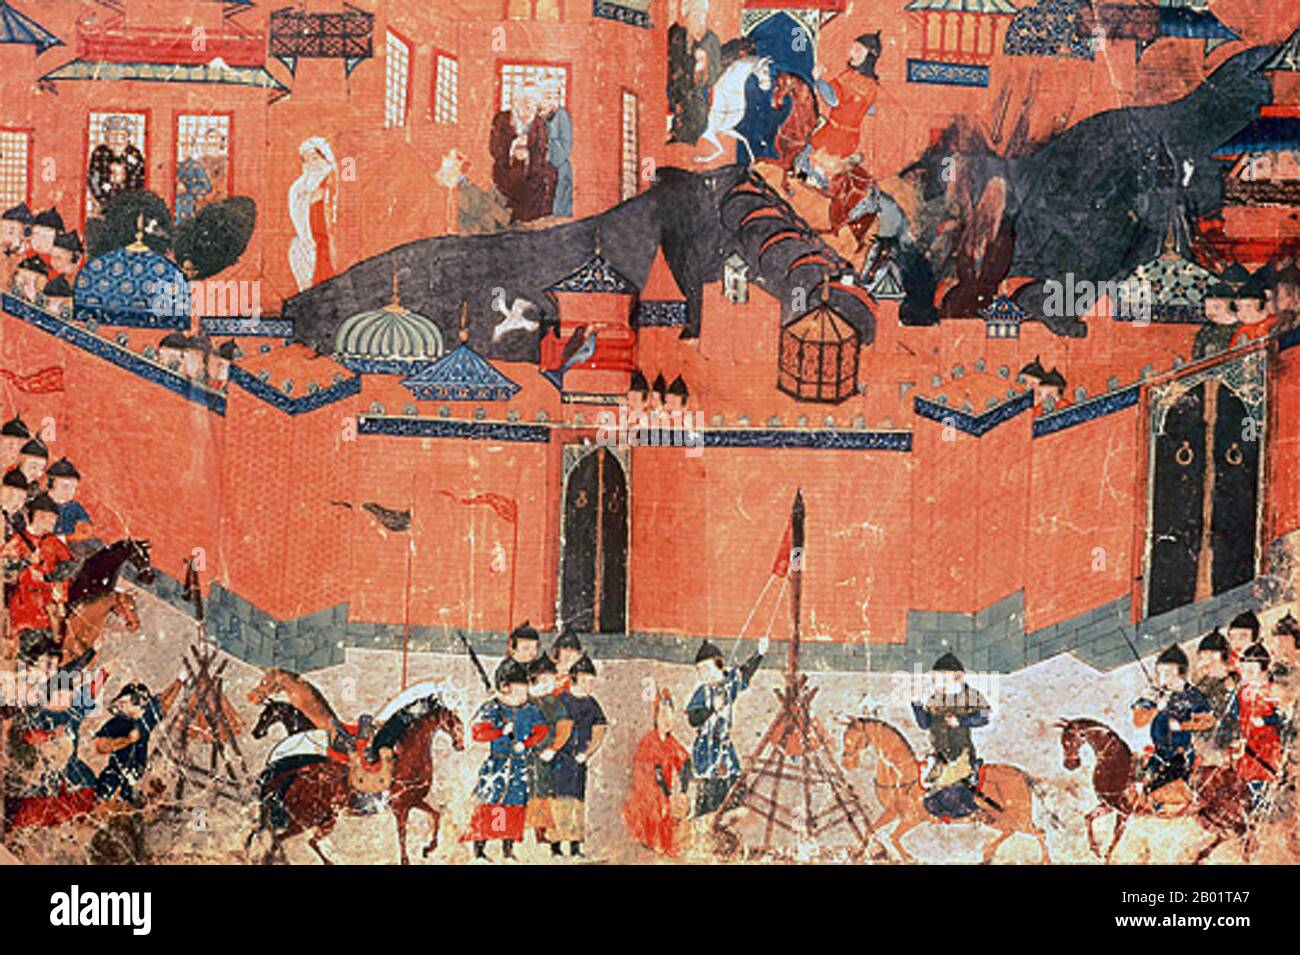 Iran/Persien: Die mongolische Belagerung Bagdads, 1258. Aquarellmalerei von Rashid al-DIN, Jami al-Tawarikh, um 1305 n. Chr. Das Jāmiʿ al-tawārīkh („Kompendium der Chroniken“) ist ein iranisches Literatur- und Geschichtswerk, das Rashid-al-DIN Hamadani zu Beginn des 14. Jahrhunderts geschrieben hat. Stockfoto